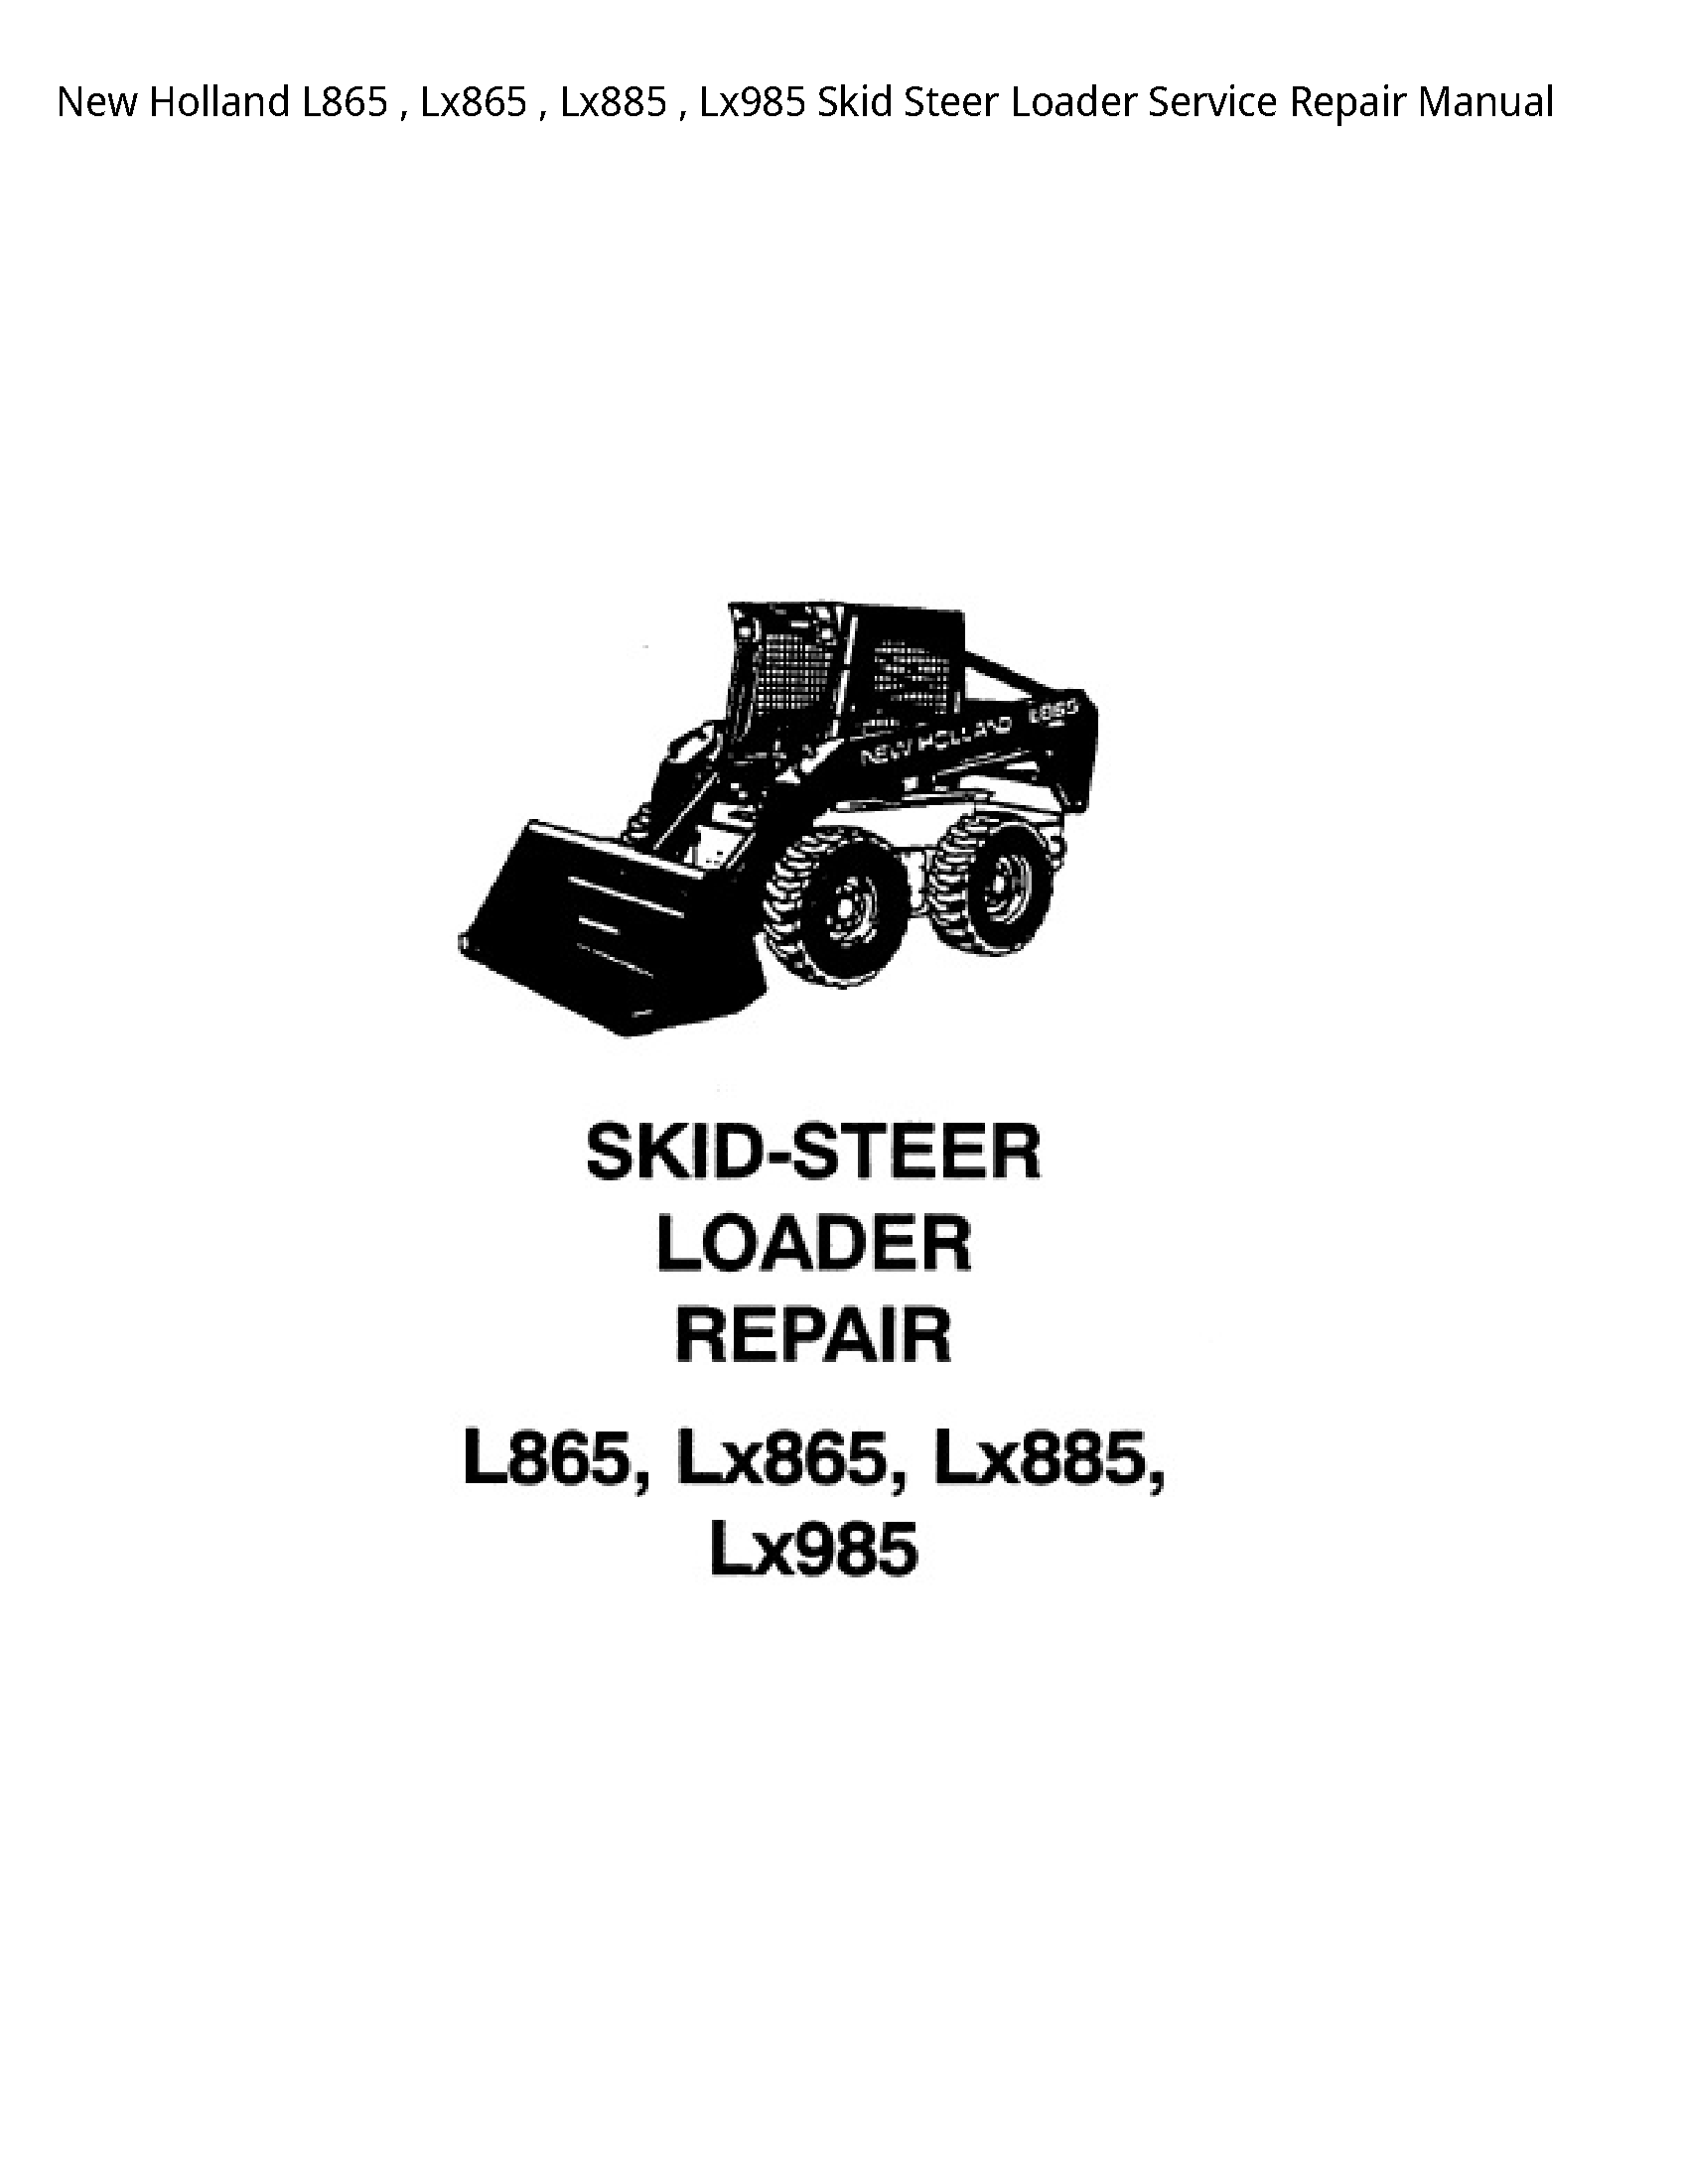 New Holland L865 Lx865 Lx885 Lx985 Skid Steer Loader Service Repair Manual